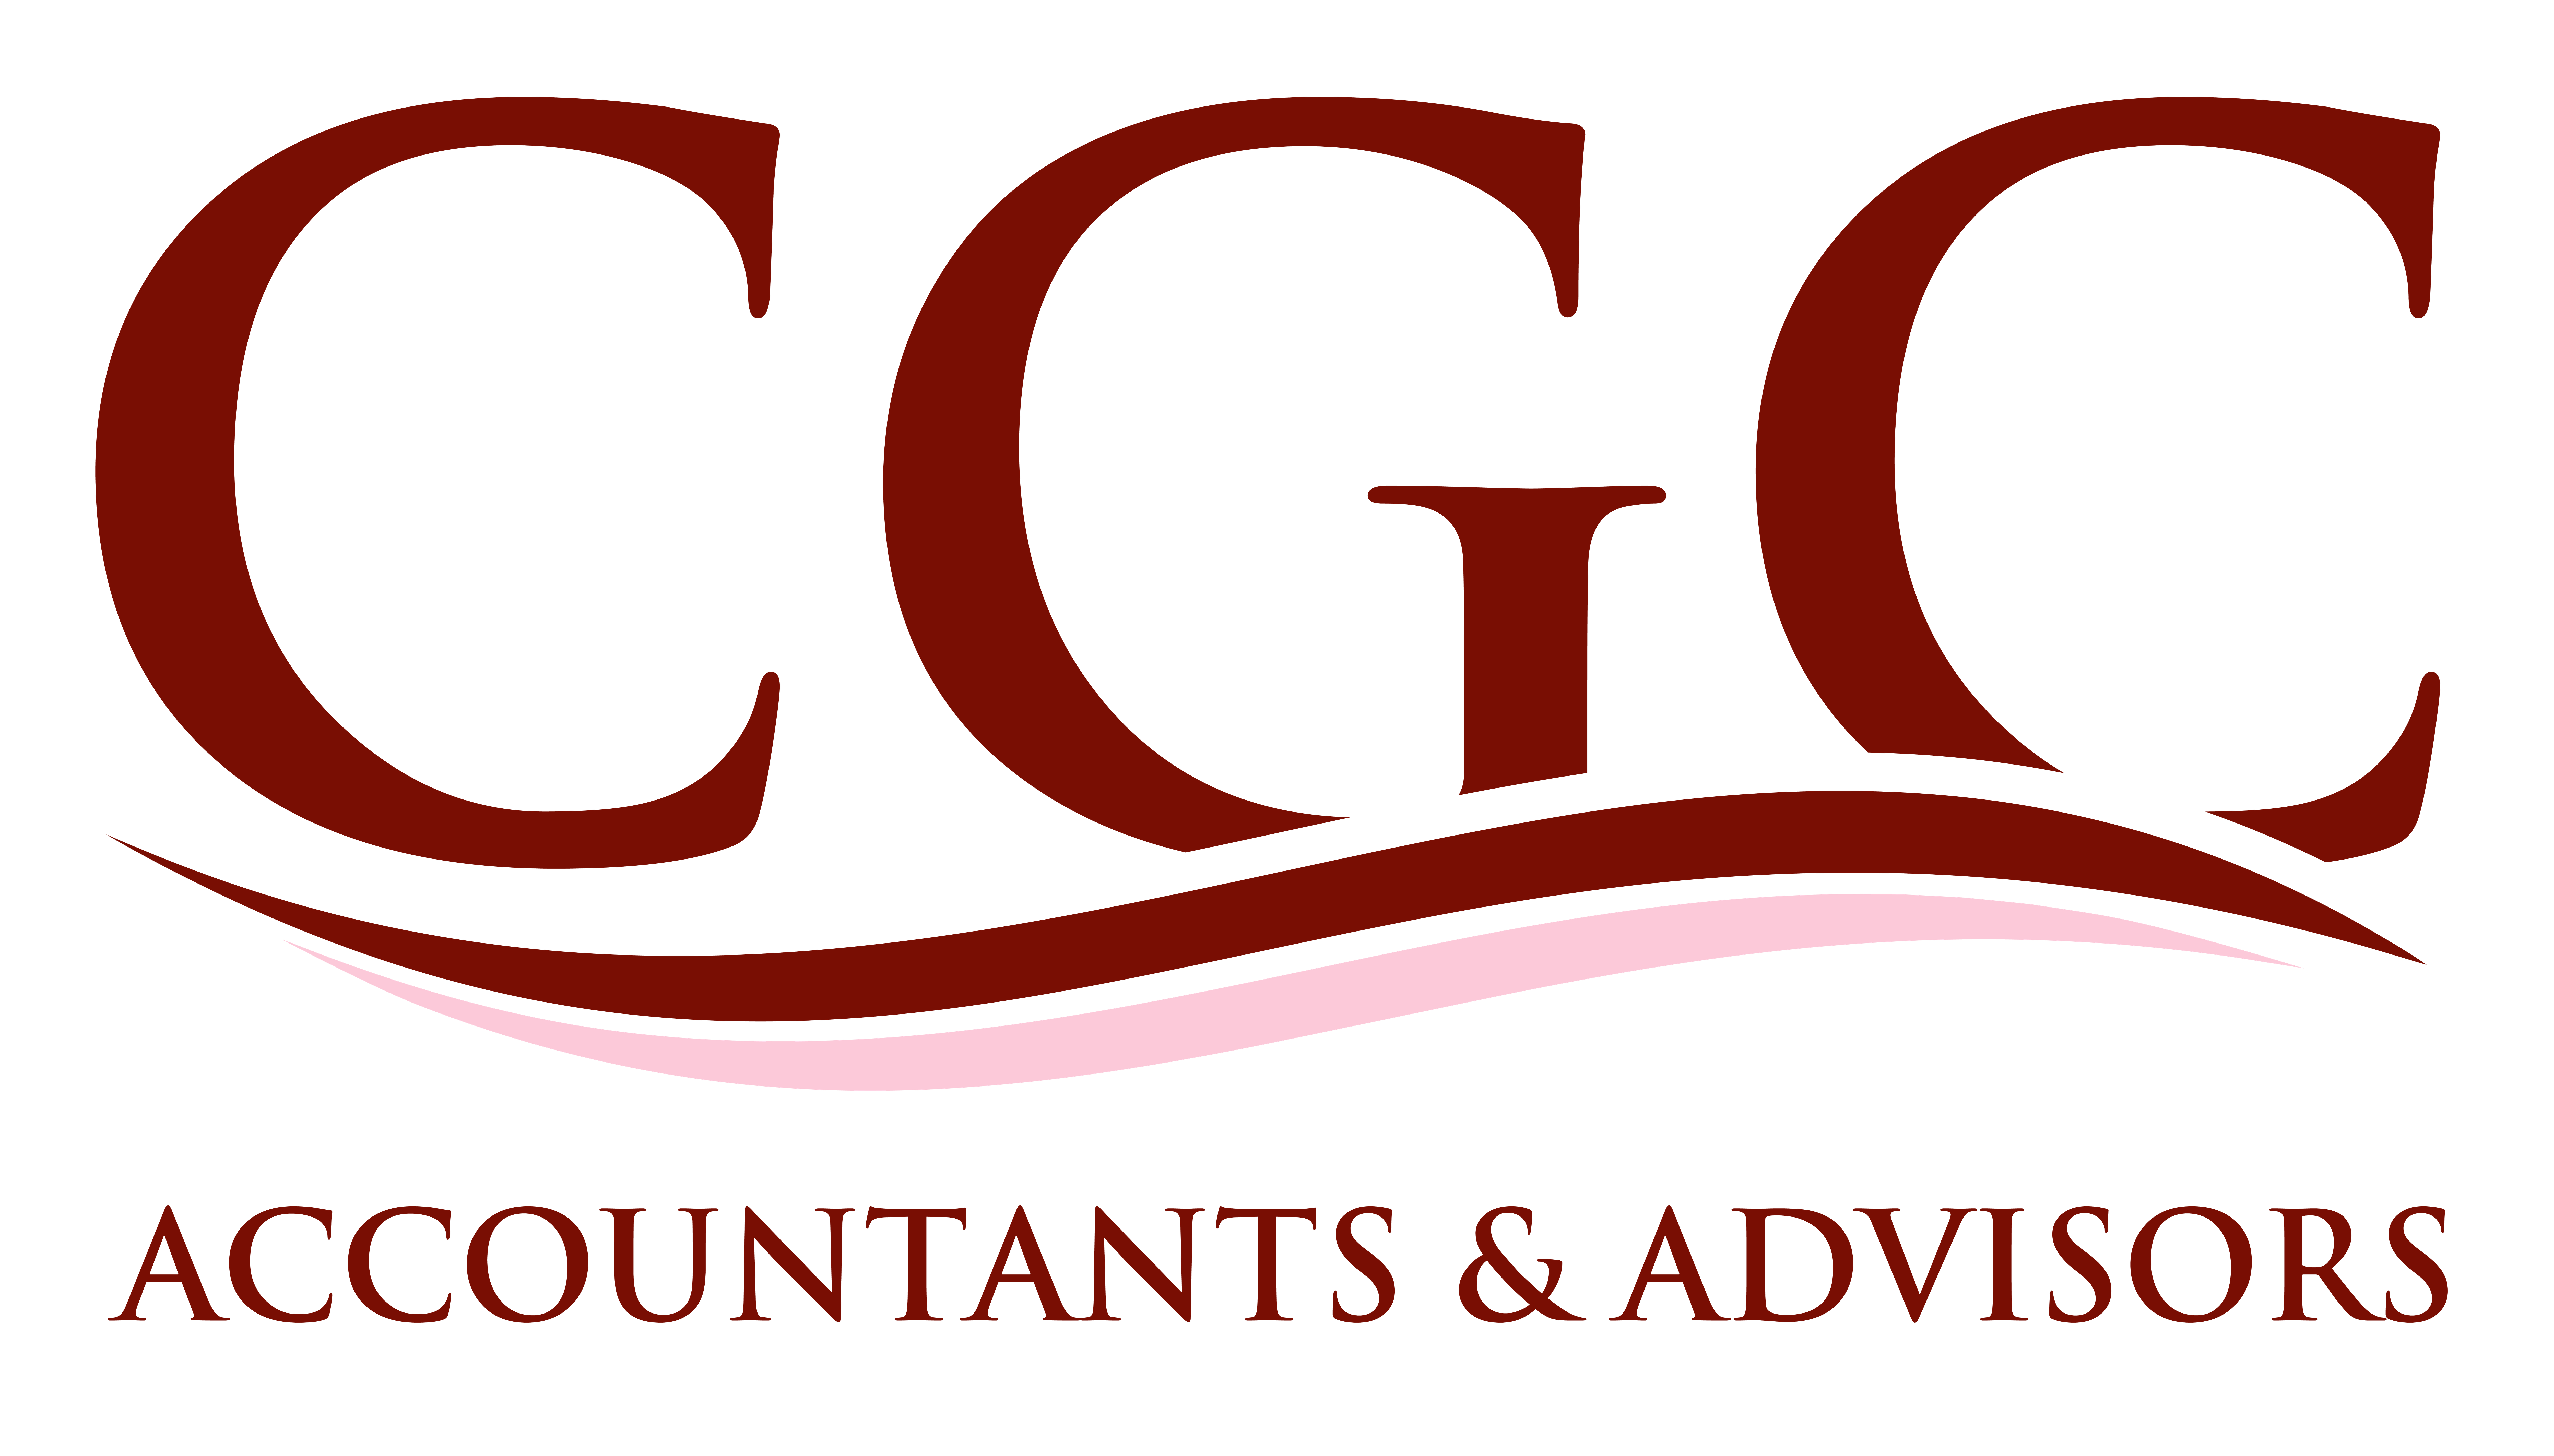 CGC Accounts & Advisors